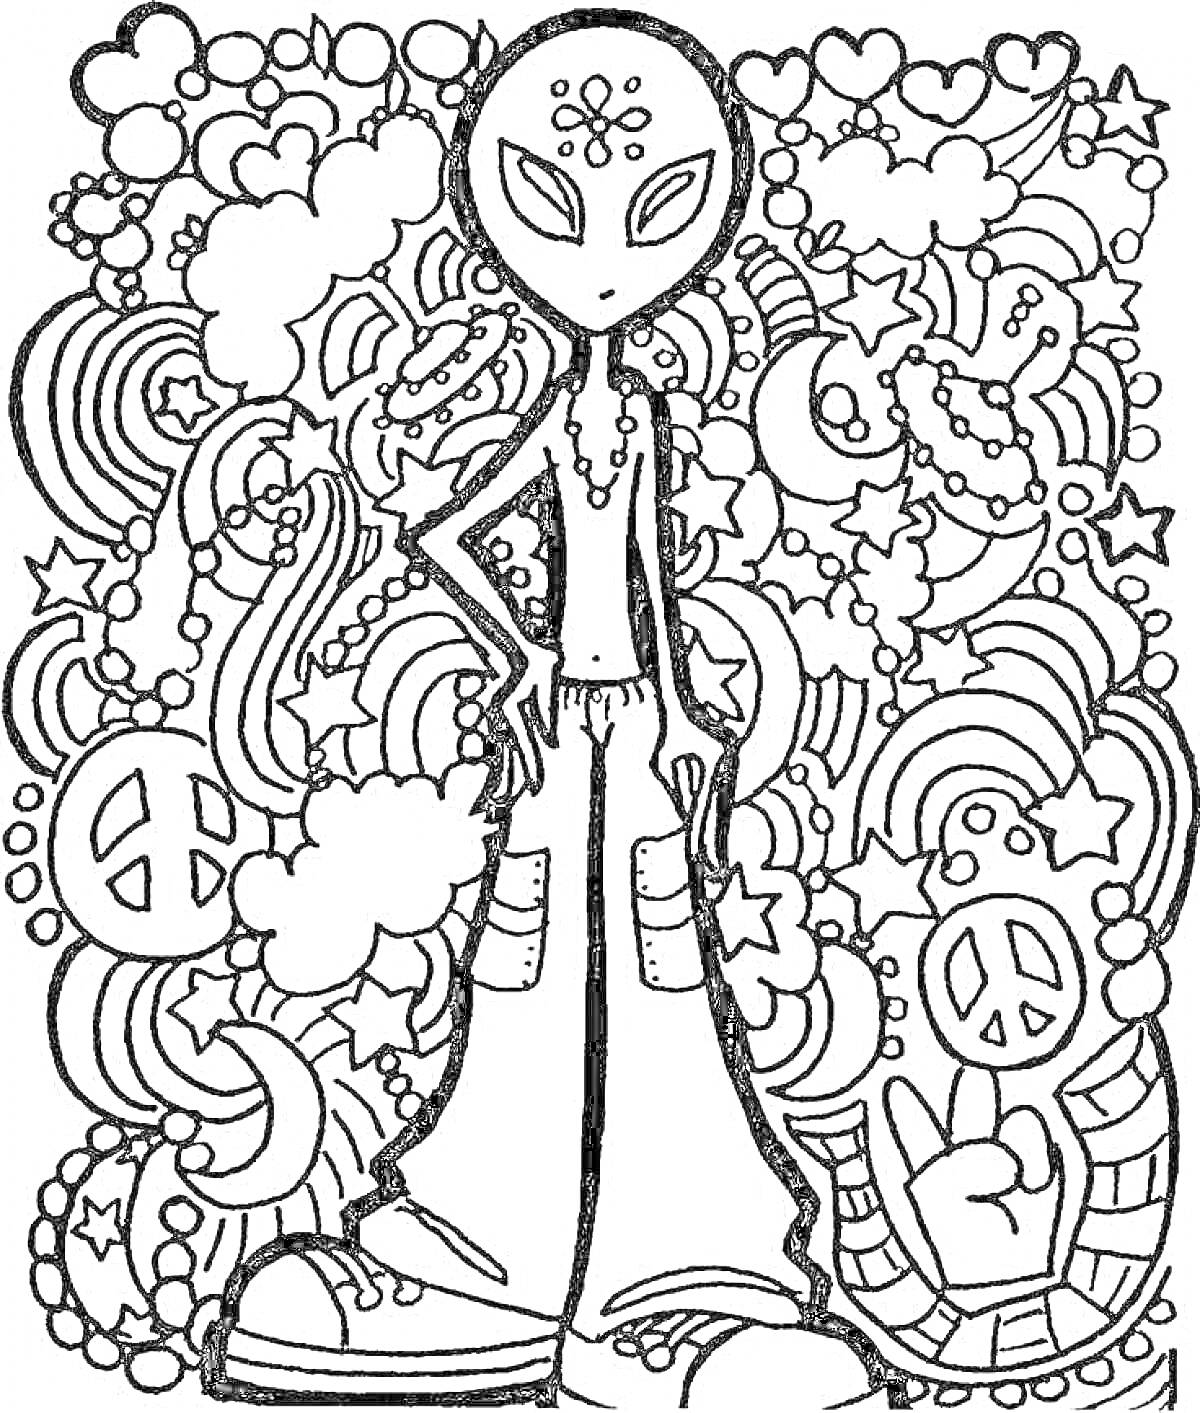 Инопланетянин в стиле хиппи с символами мира, облаками, сердцами, звездами и радугами